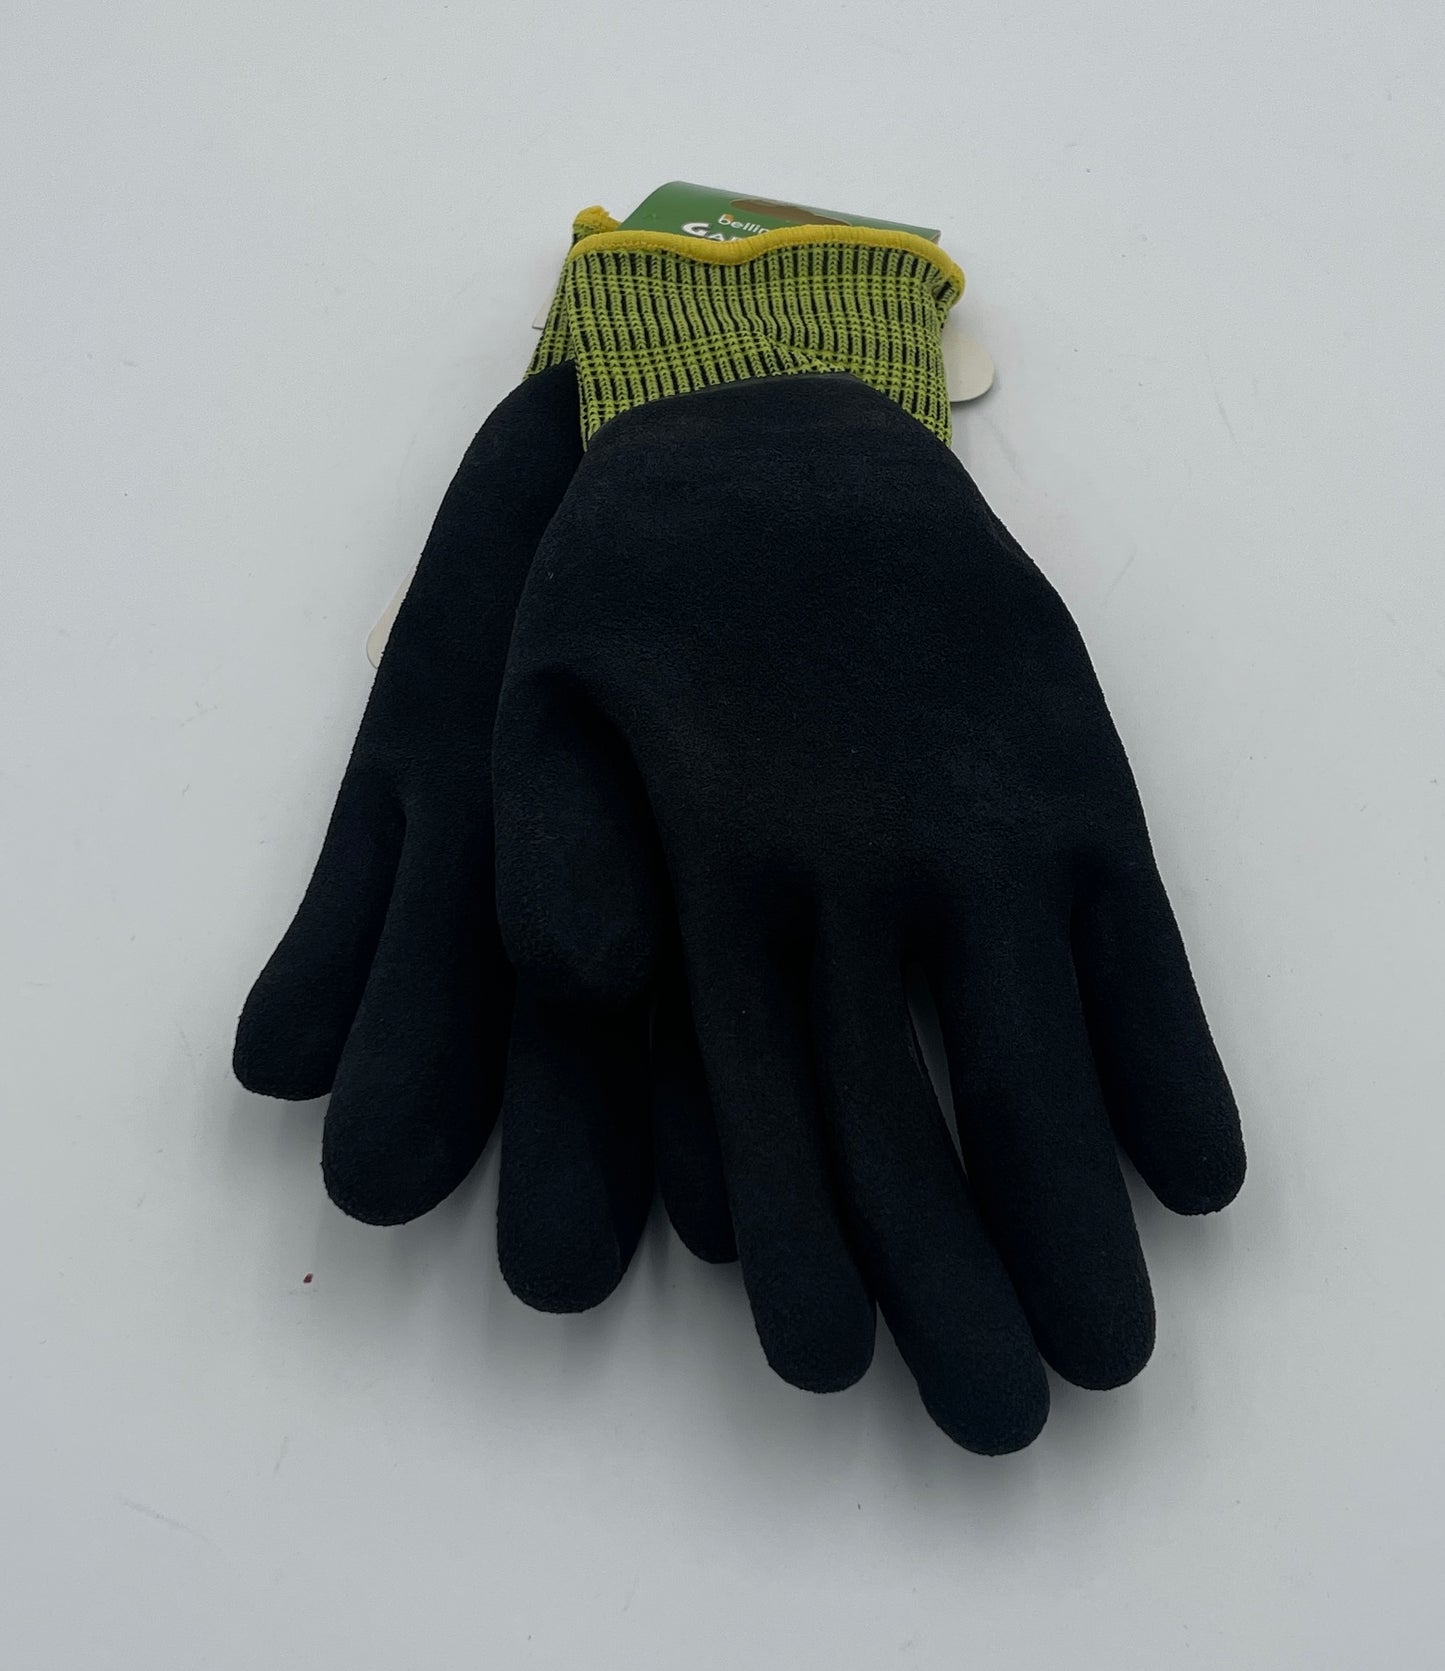 Gloves, Gardenware Extra Grip